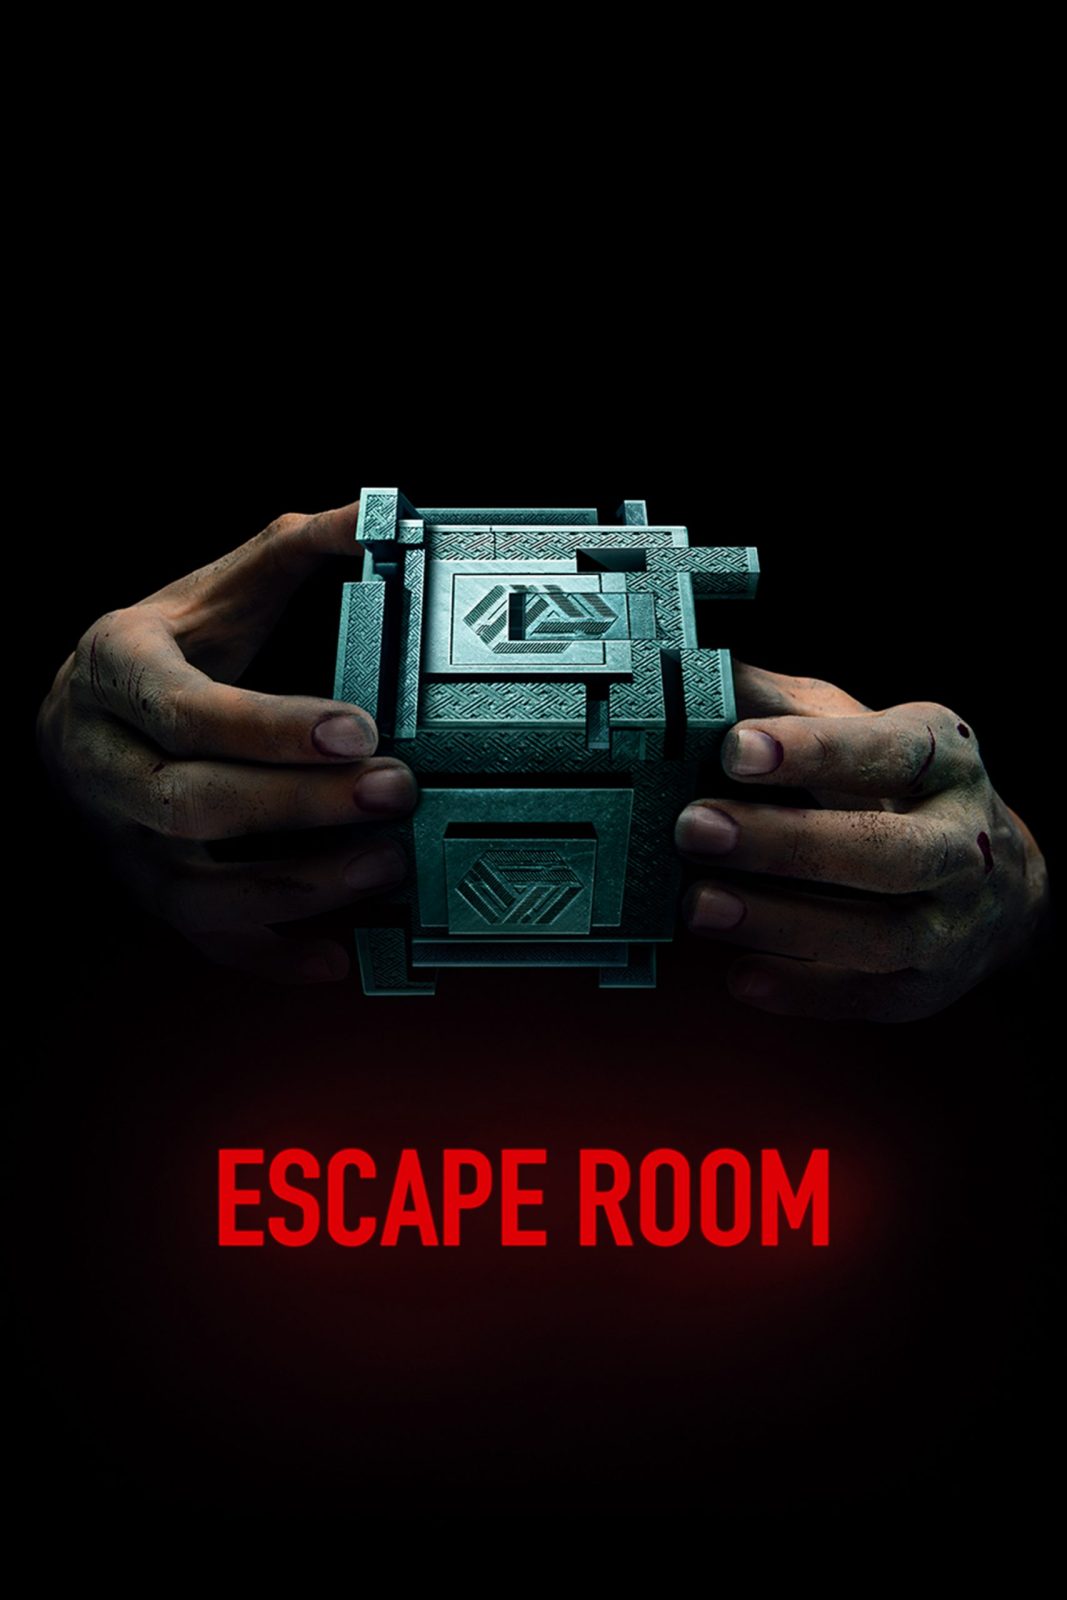 دانلود فیلم Escape Room 2019